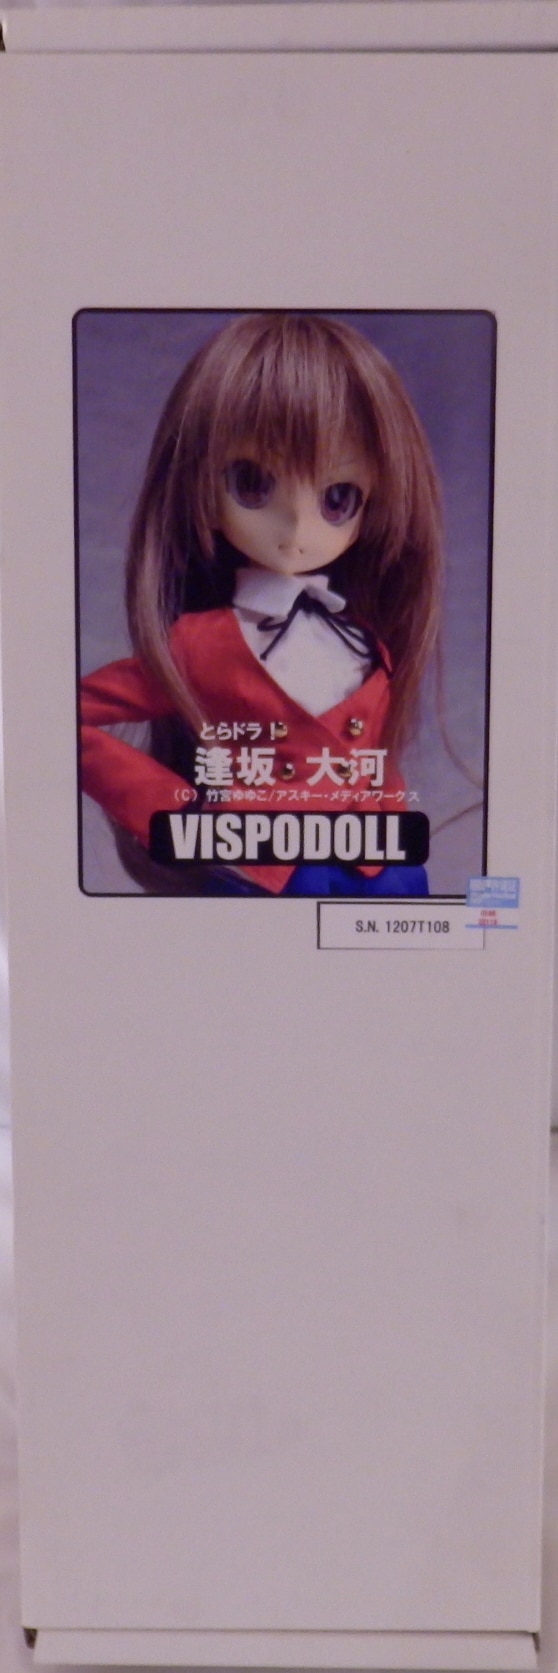 まんだらけ通販 Vispo Doll とらドラ 逢坂大河 コンプレックスからの出品